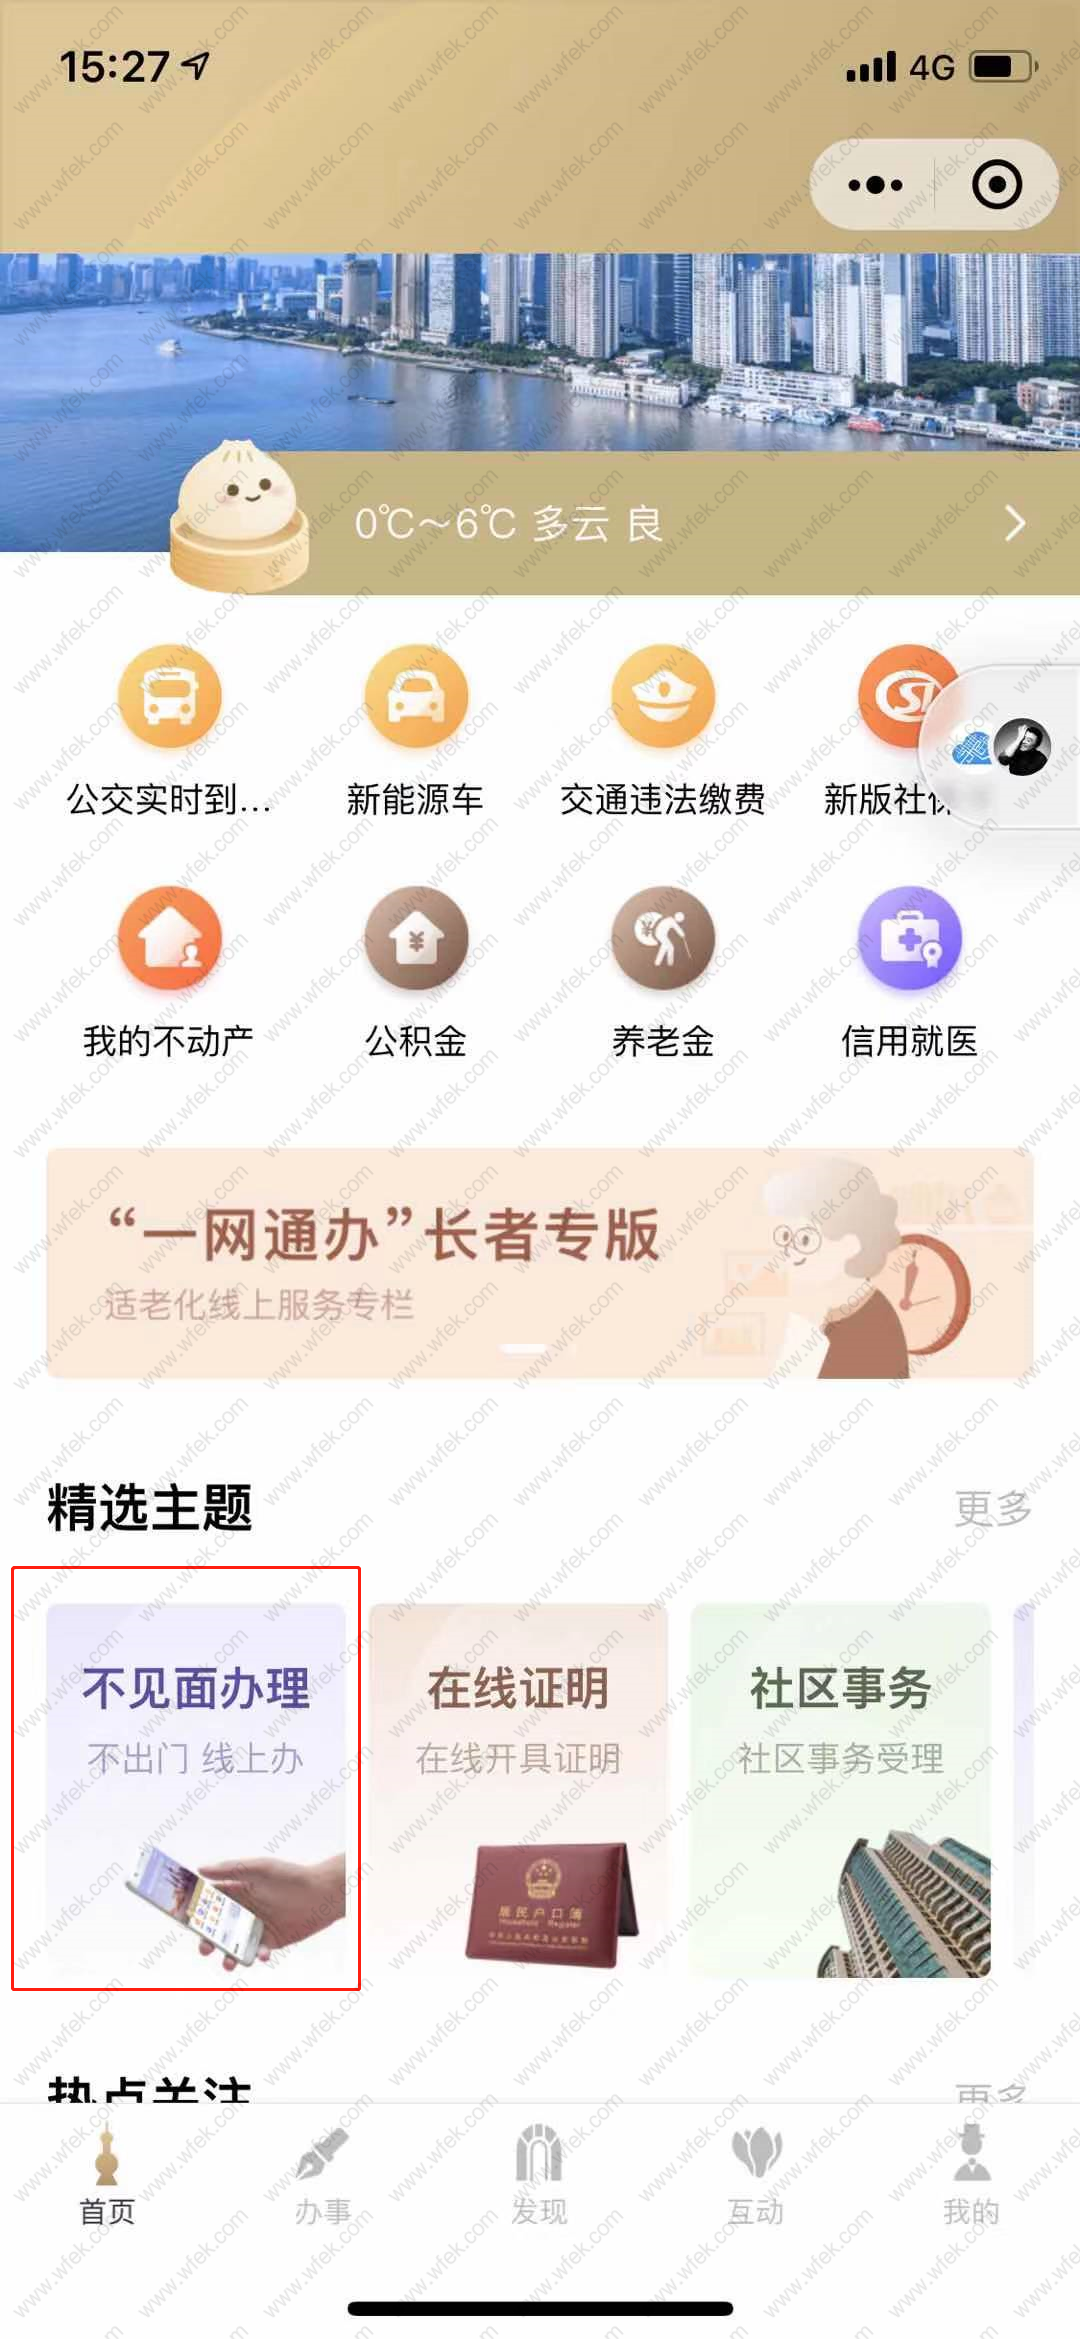 上海居住证网上办理流程